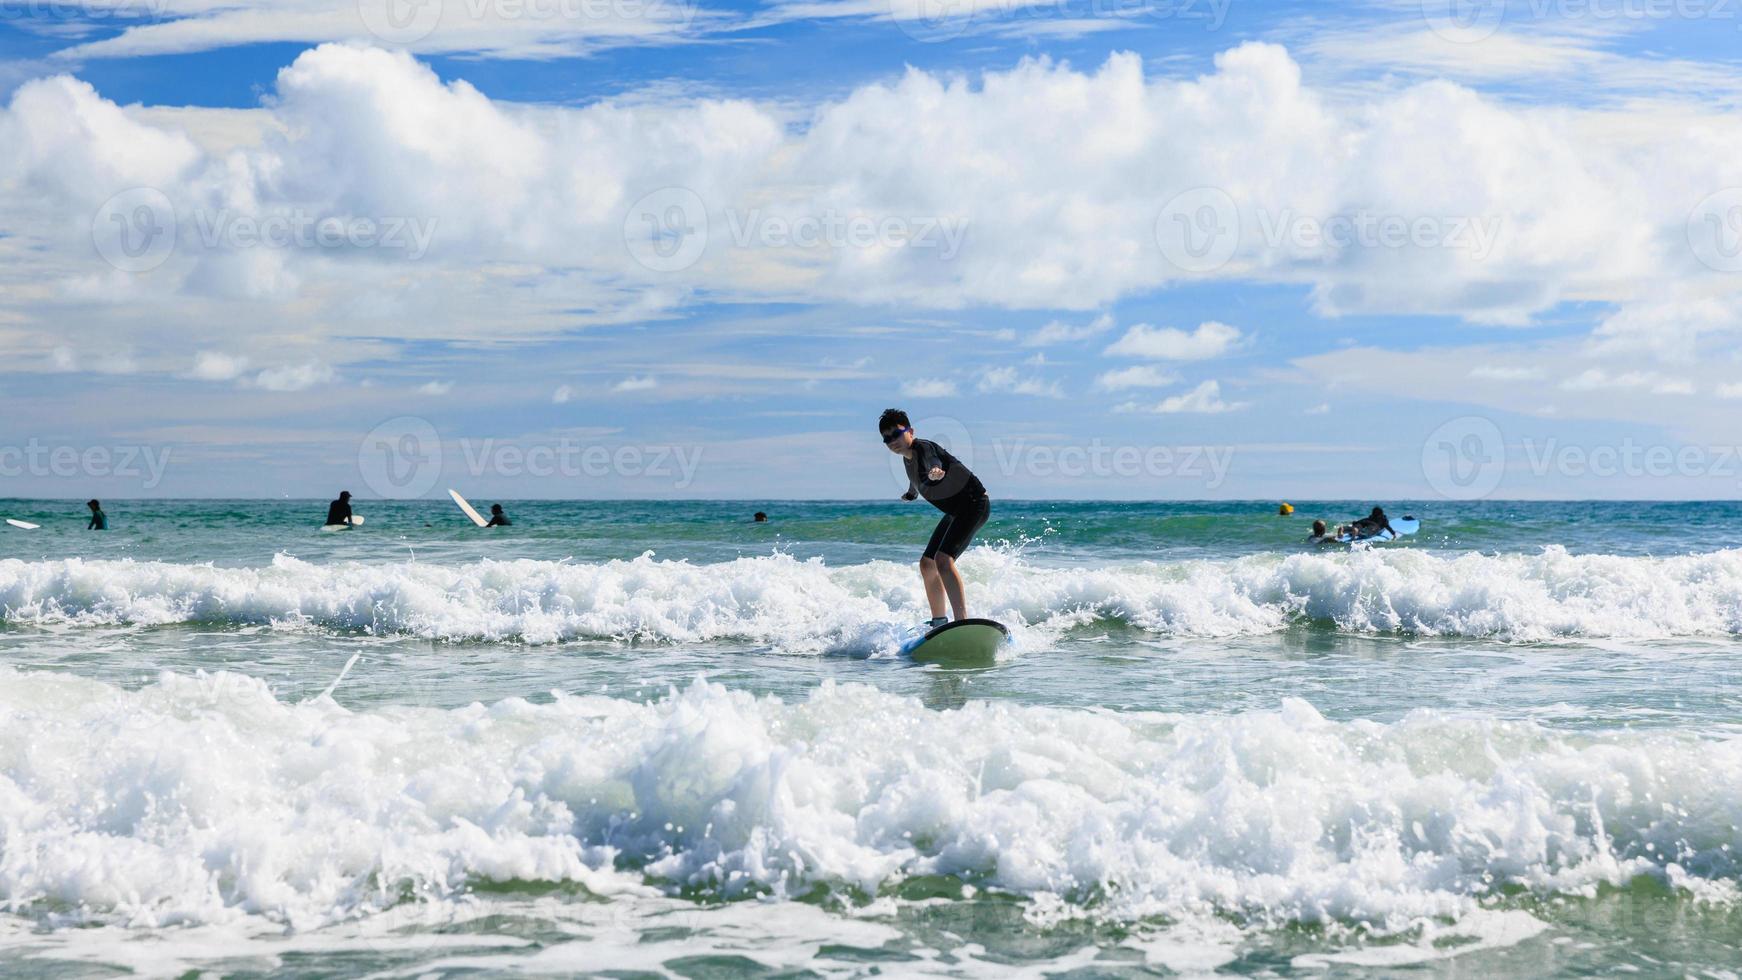 ung pojke först Framgång och står på en mjuk styrelse medan praktiserande surfing i en nybörjare klass. tonåring aktivt balansering på vatten sporter Utrustning och påfrestande ny upplevelser. foto